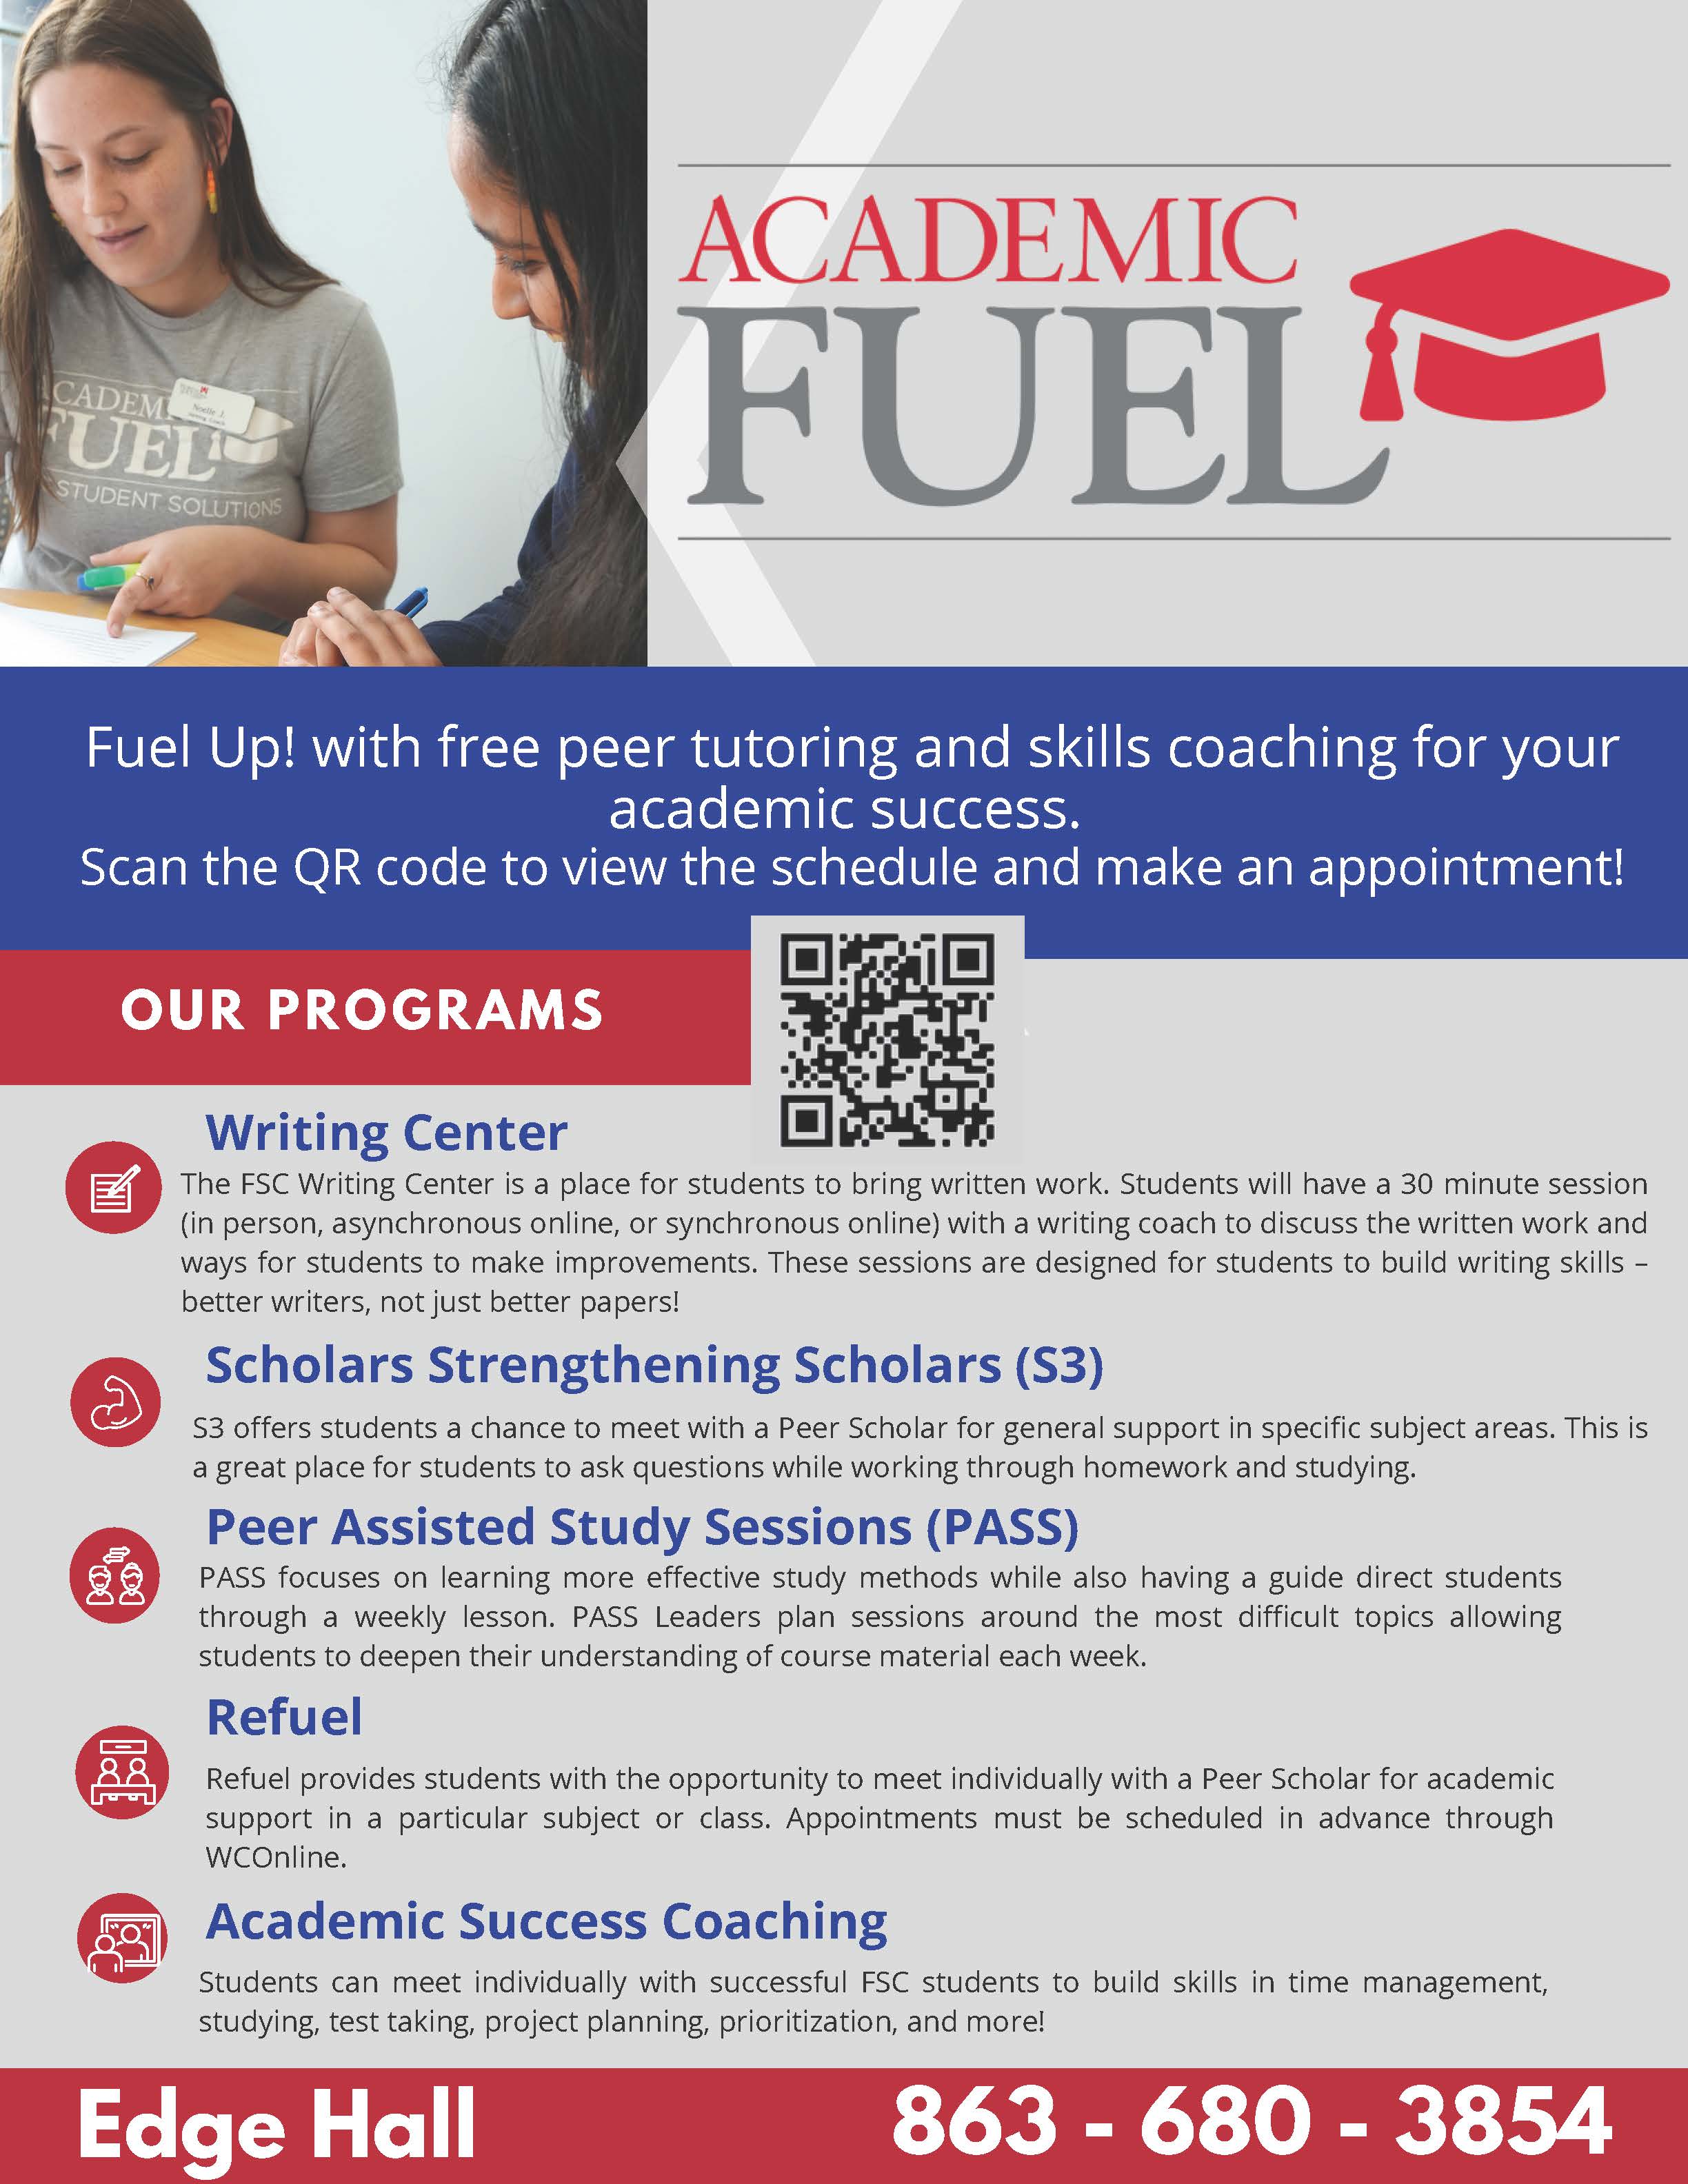 Academic Fuel flyer